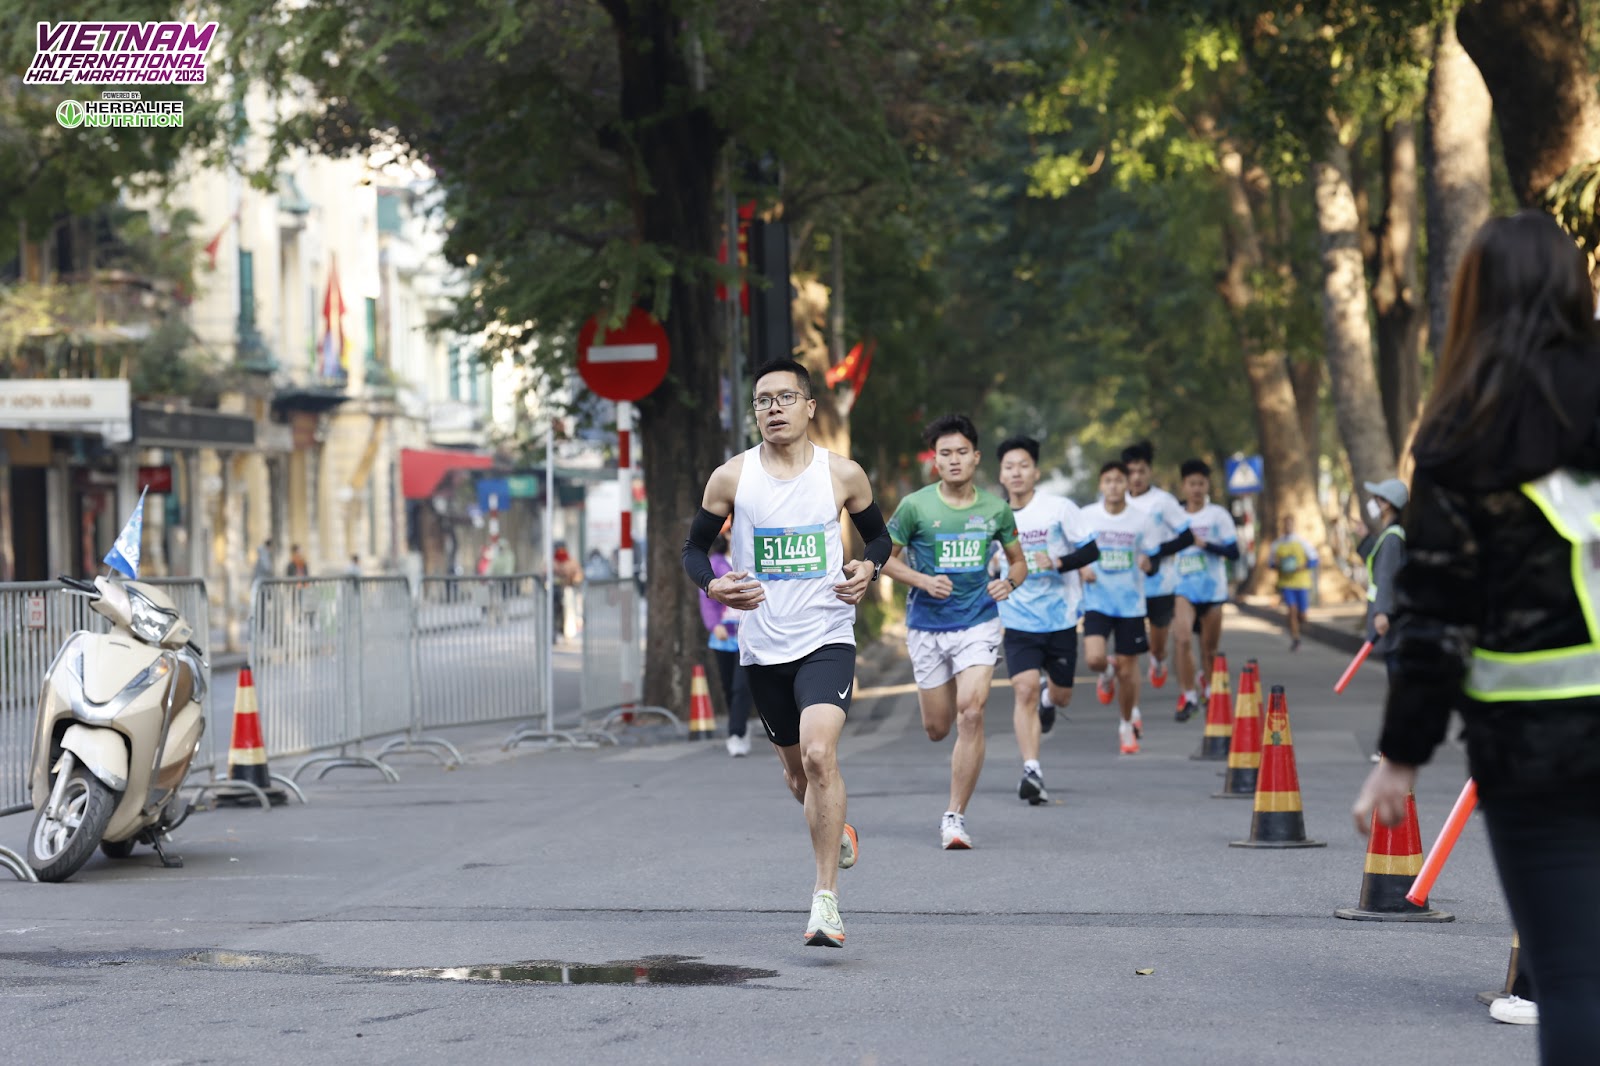 VĐV Nguyễn Mạnh Cường, hiện đang công tác tại BIDV chia sẻ về hành trình chinh phục cuộc đua marathon với mong muốn cung cấp thêm các thông tin cho các runner phong trào khác đang có mong muốn chinh phục cự ly này.